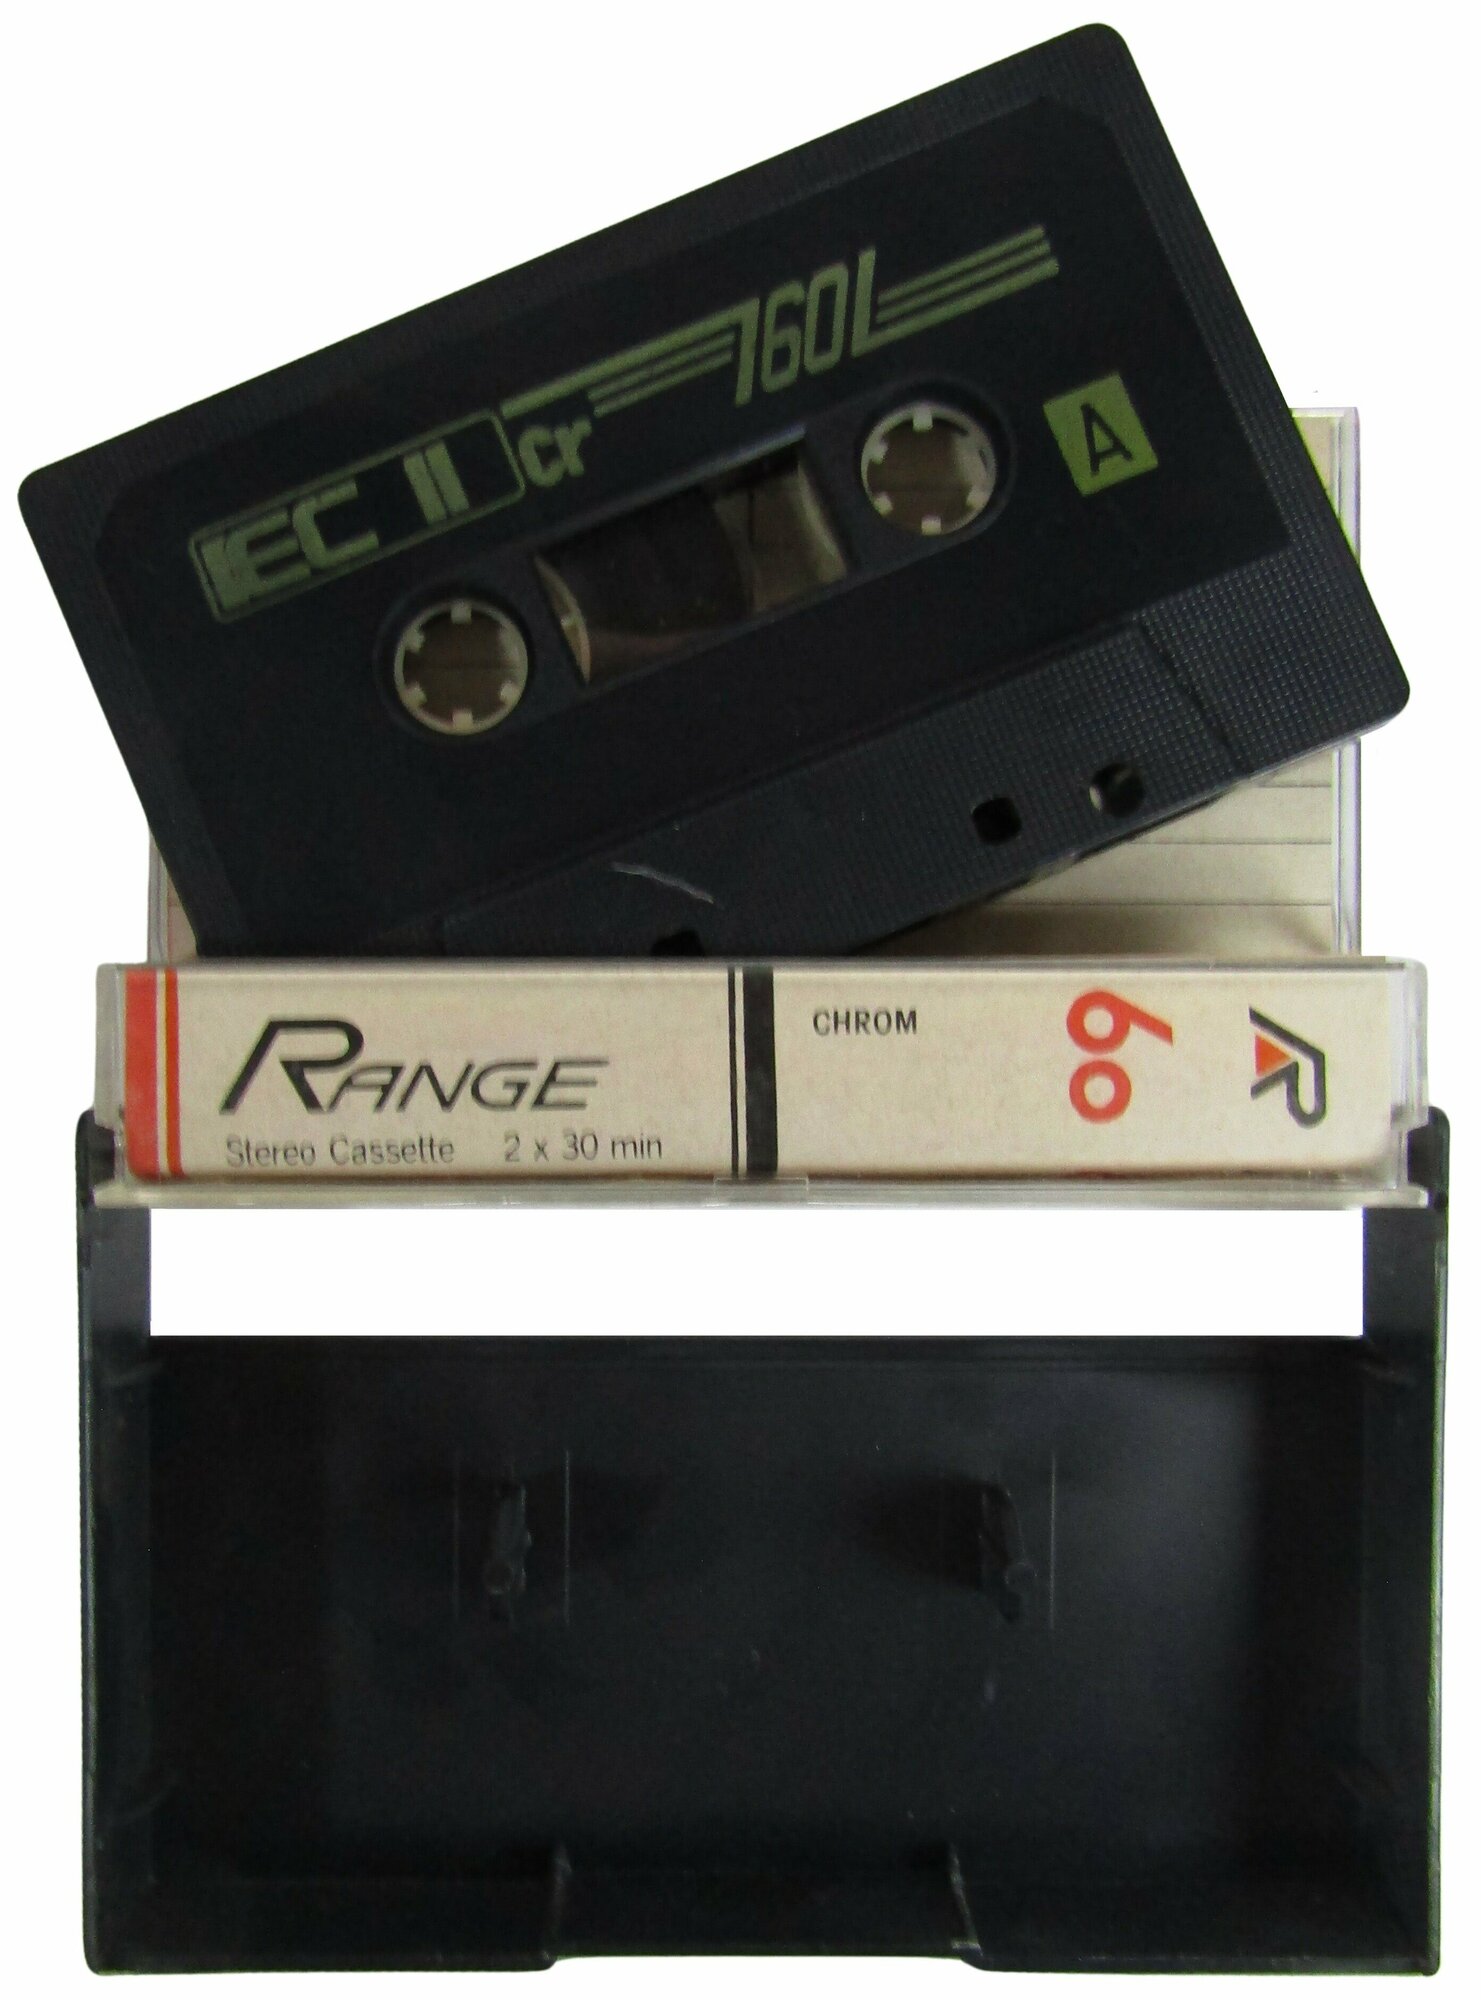 Range Chrom 60 Type II Аудиокассета магнитофонная 60 минут. Товар уцененный